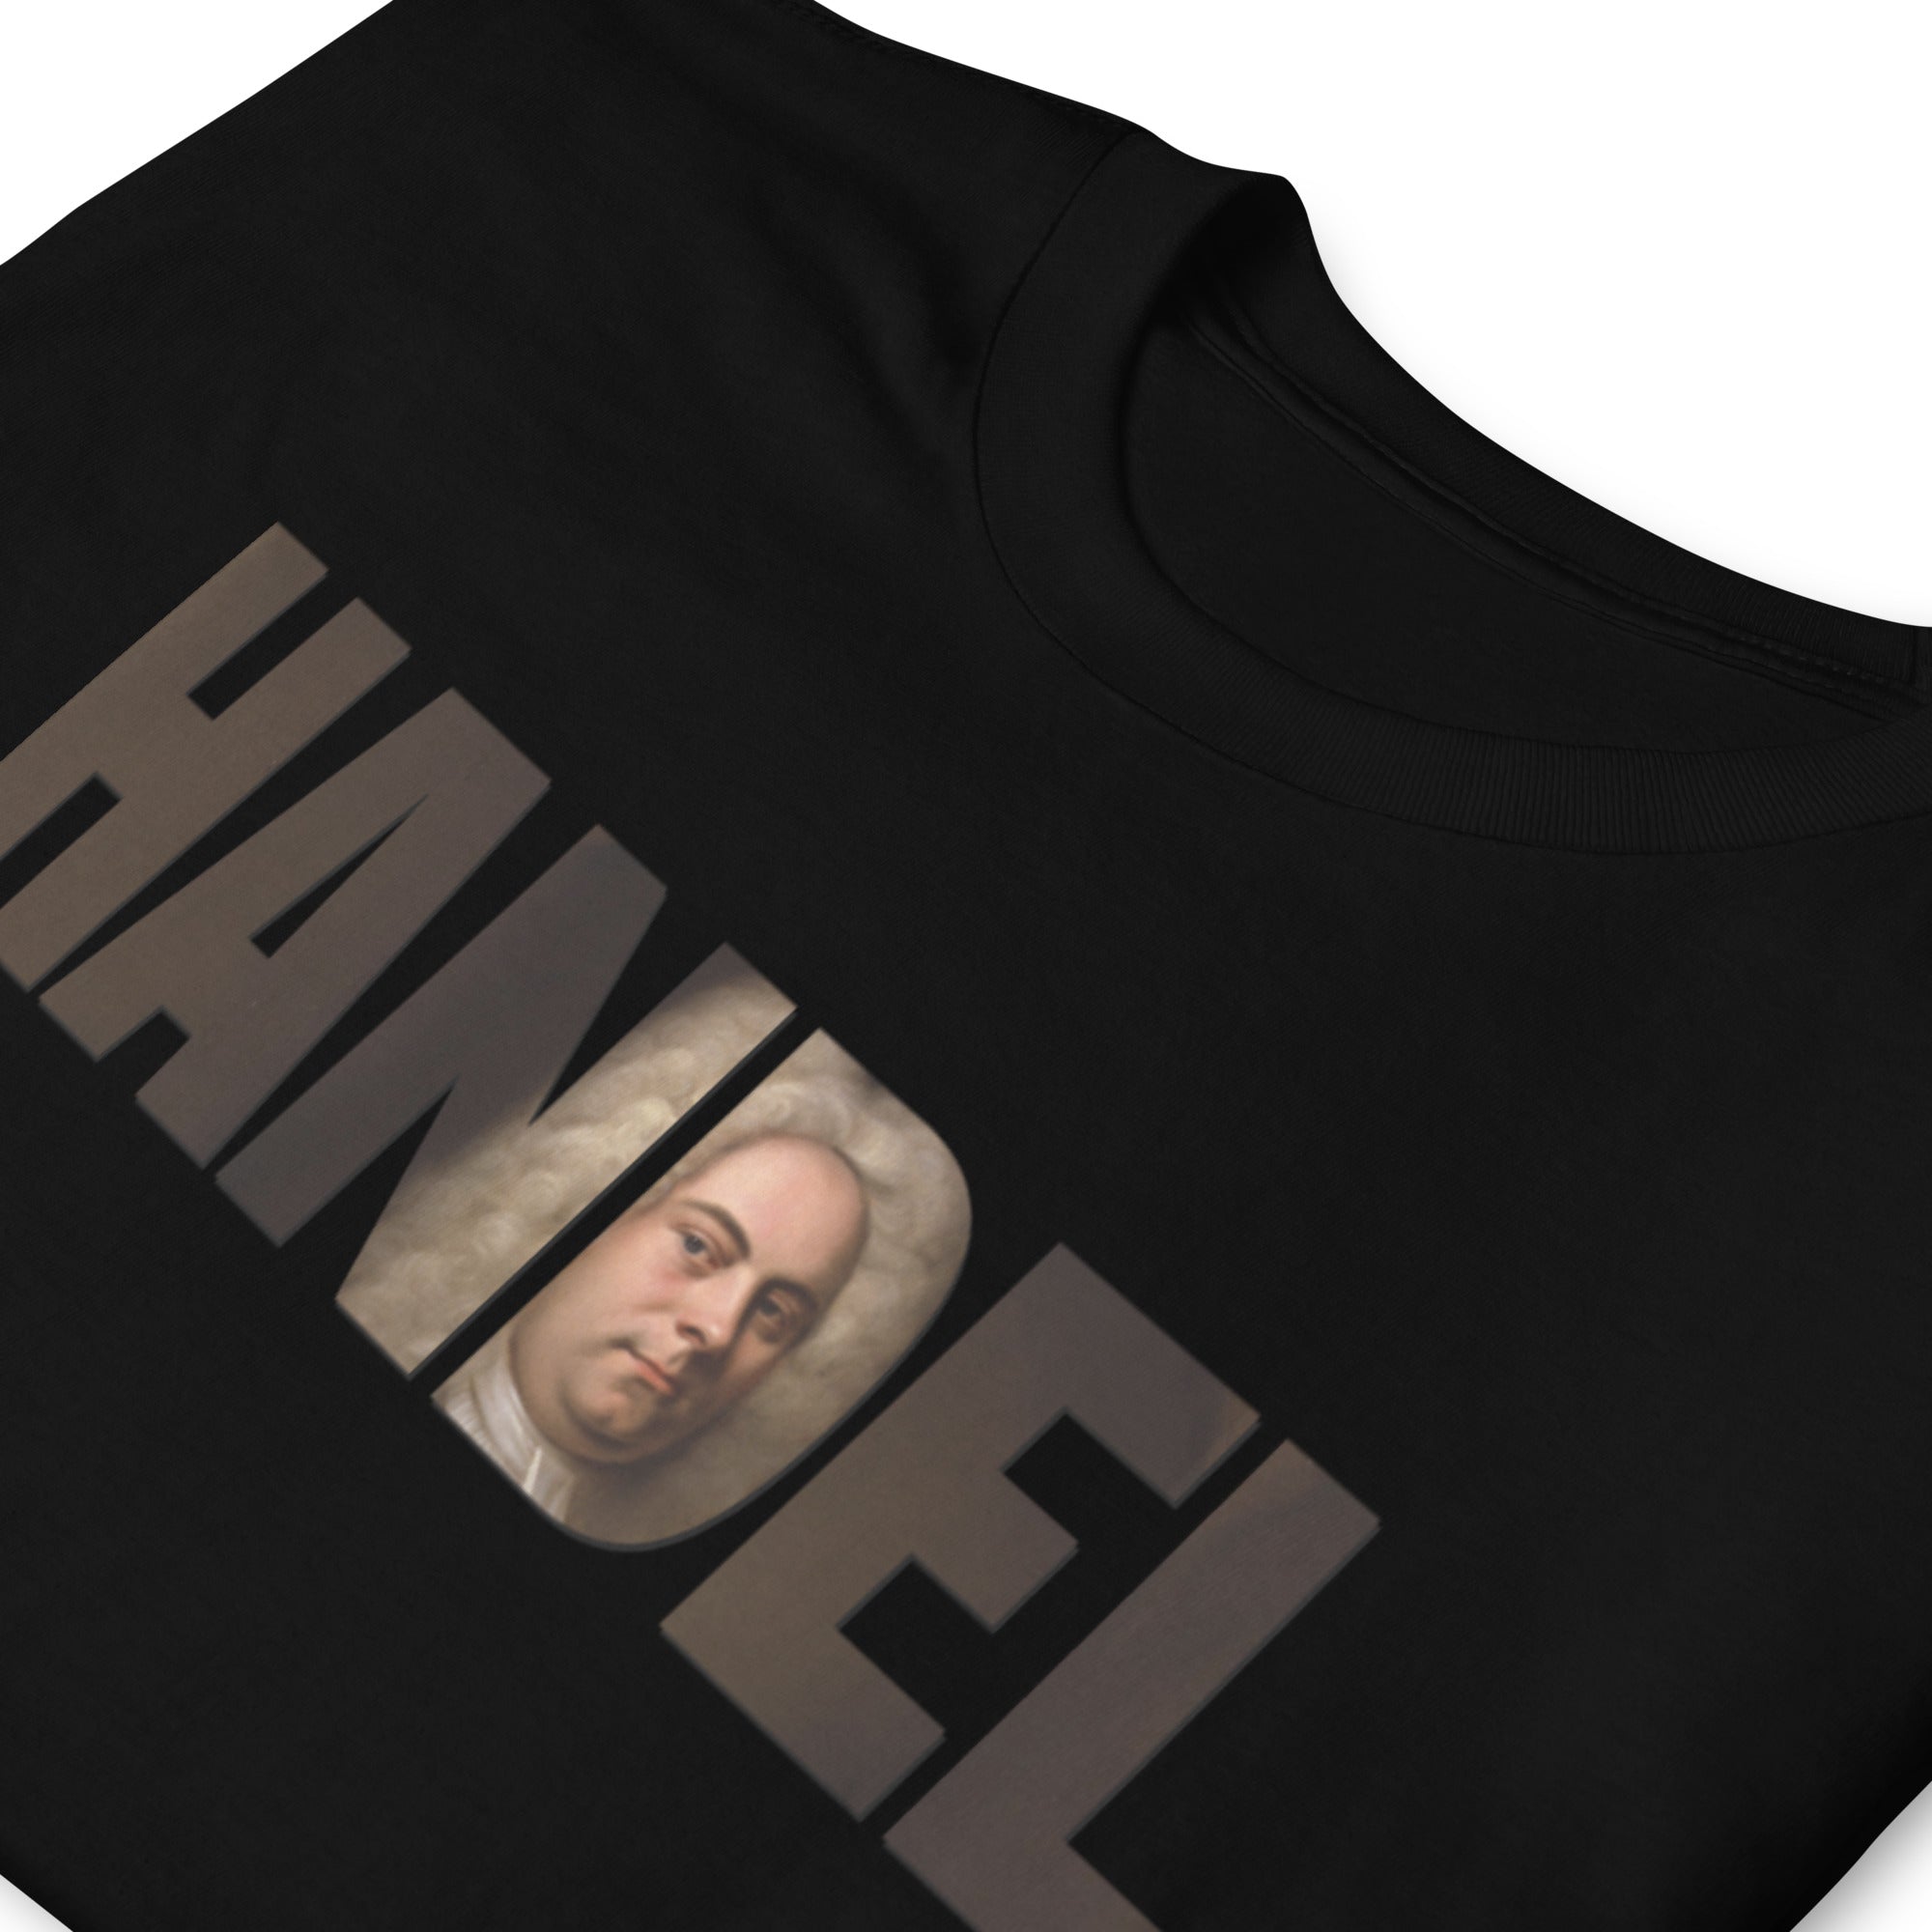 Handel - Large Text Cutout Portrait - Short-Sleeve T-Shirt